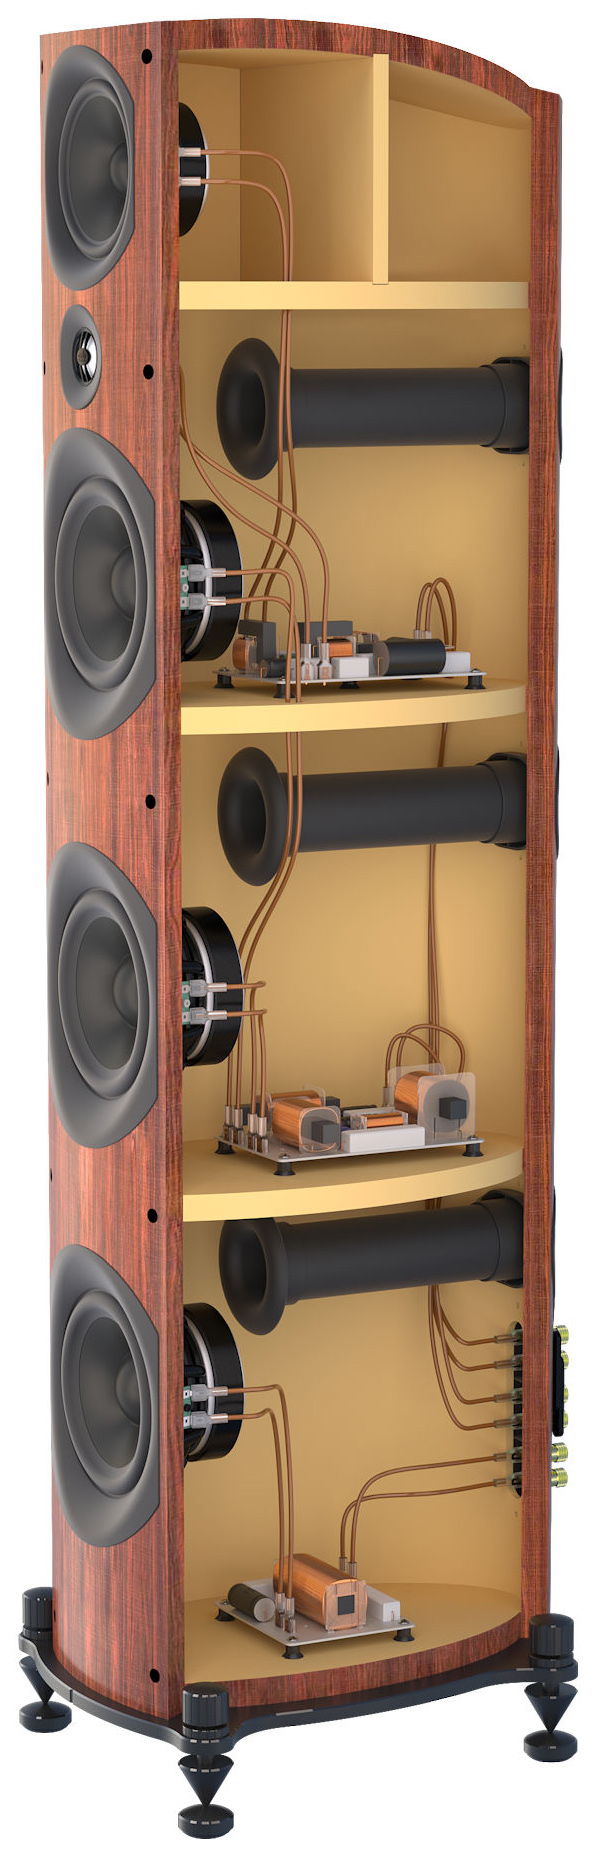 psb-imagine-t3-floorstanding-speakers-image5.jpg